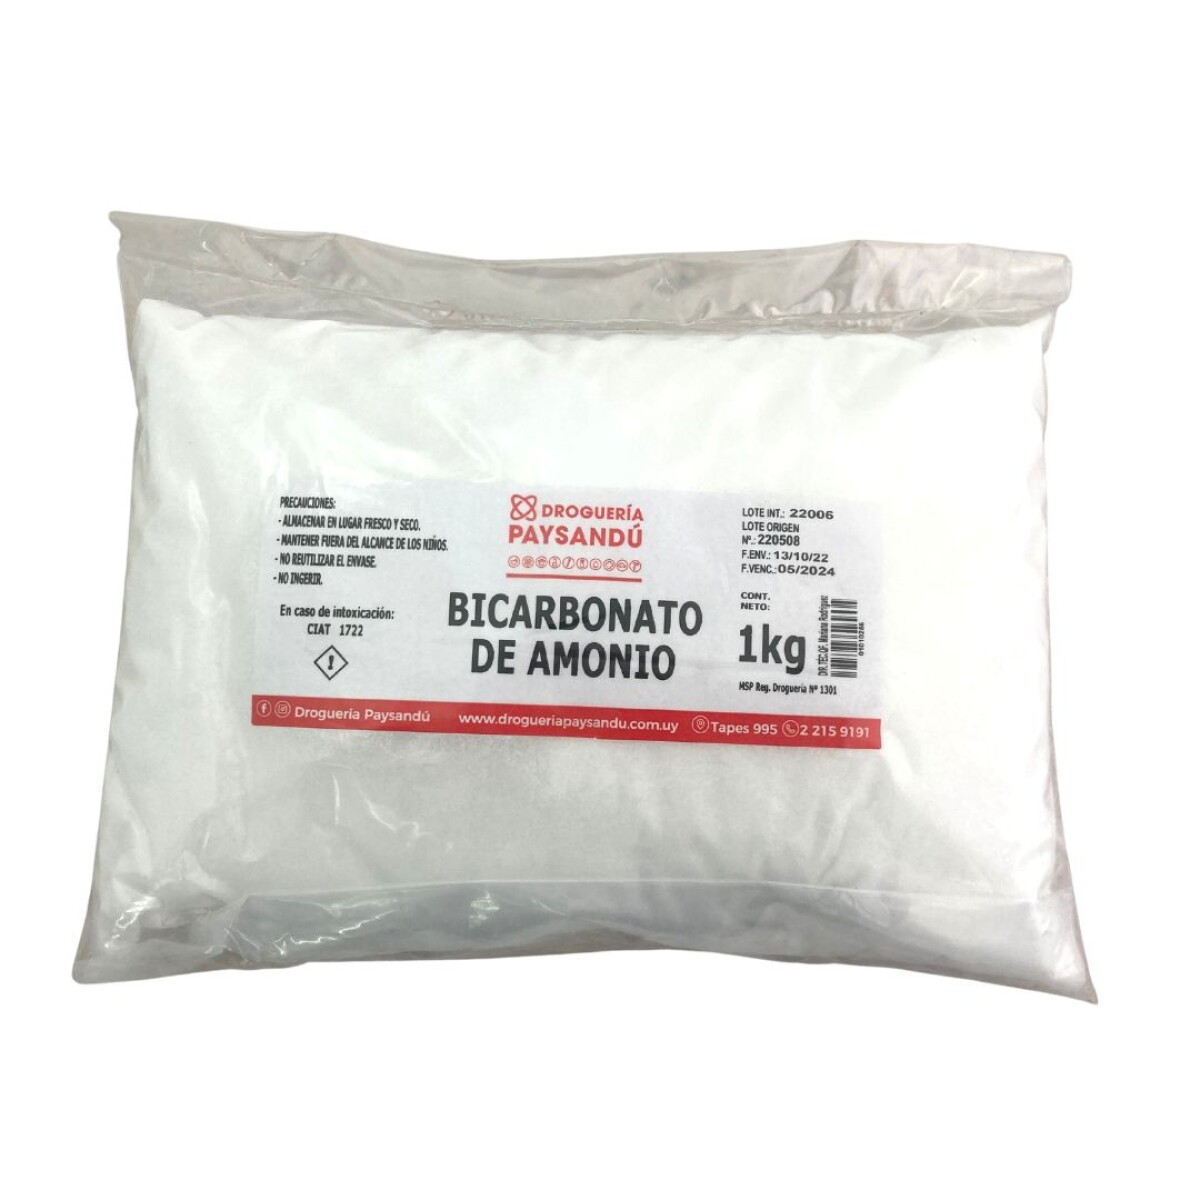 Bicarbonato de amonio 1kg 